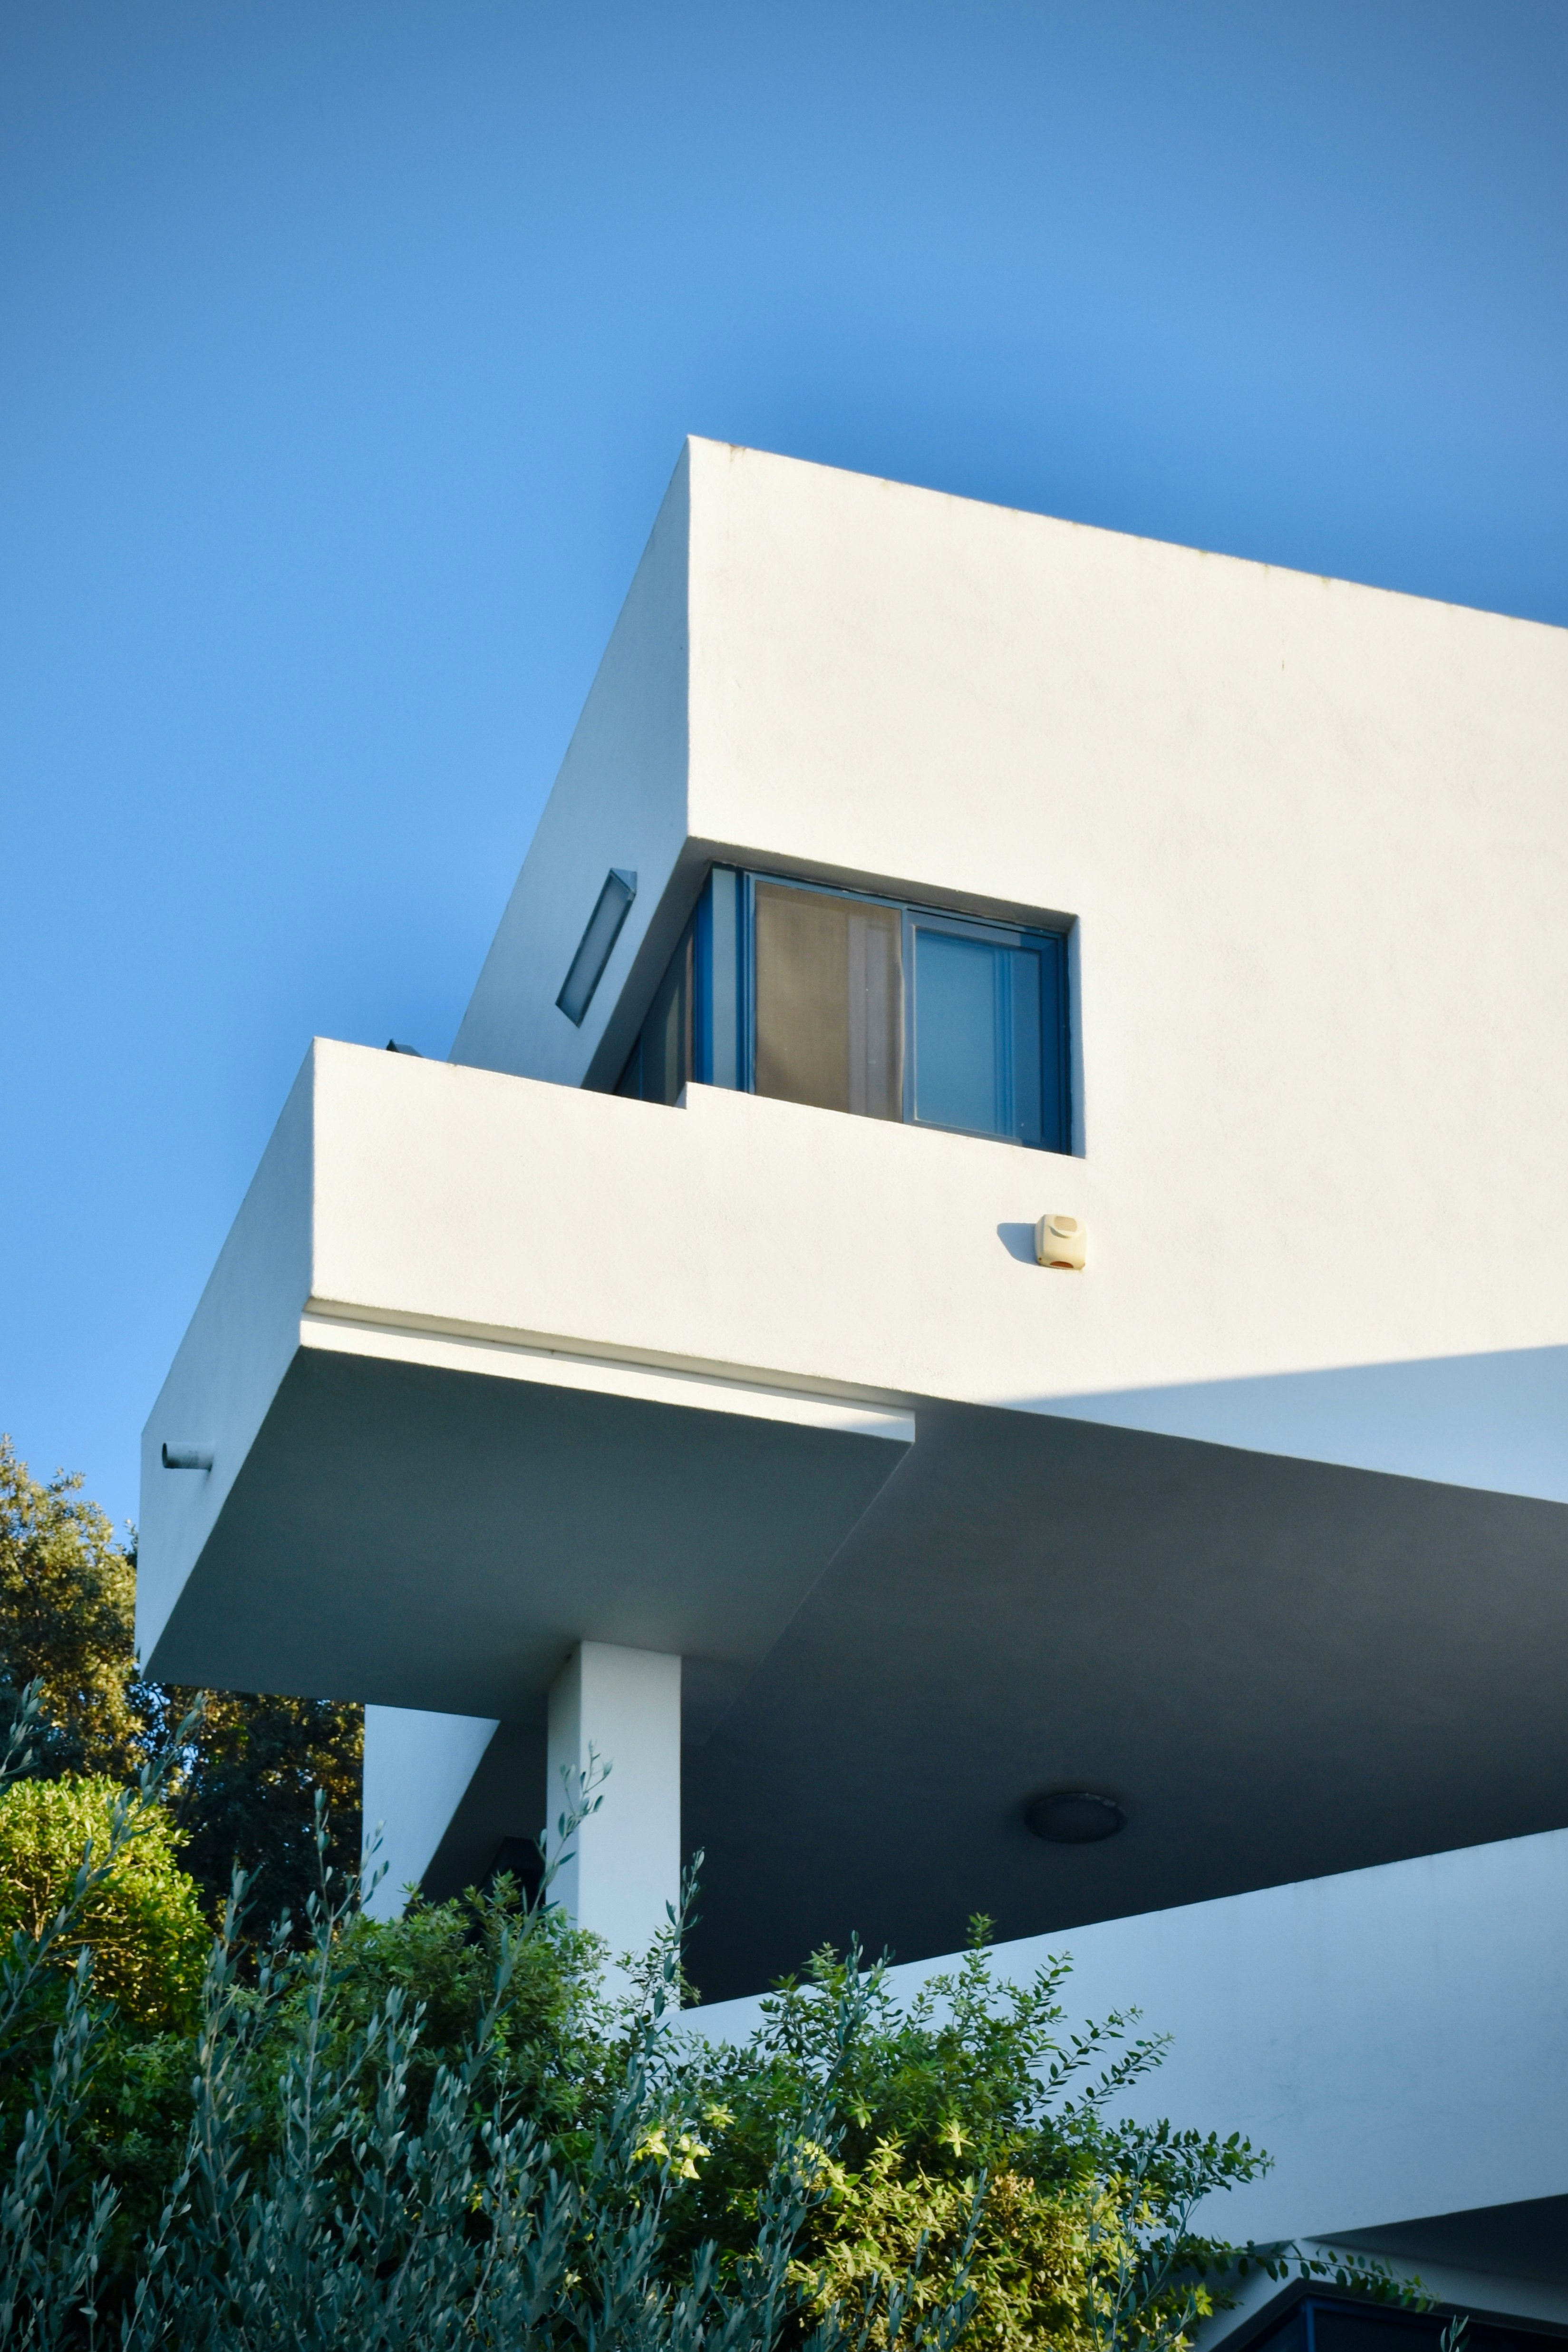 1970s “James Bond”-style villa on the island of Ischia.